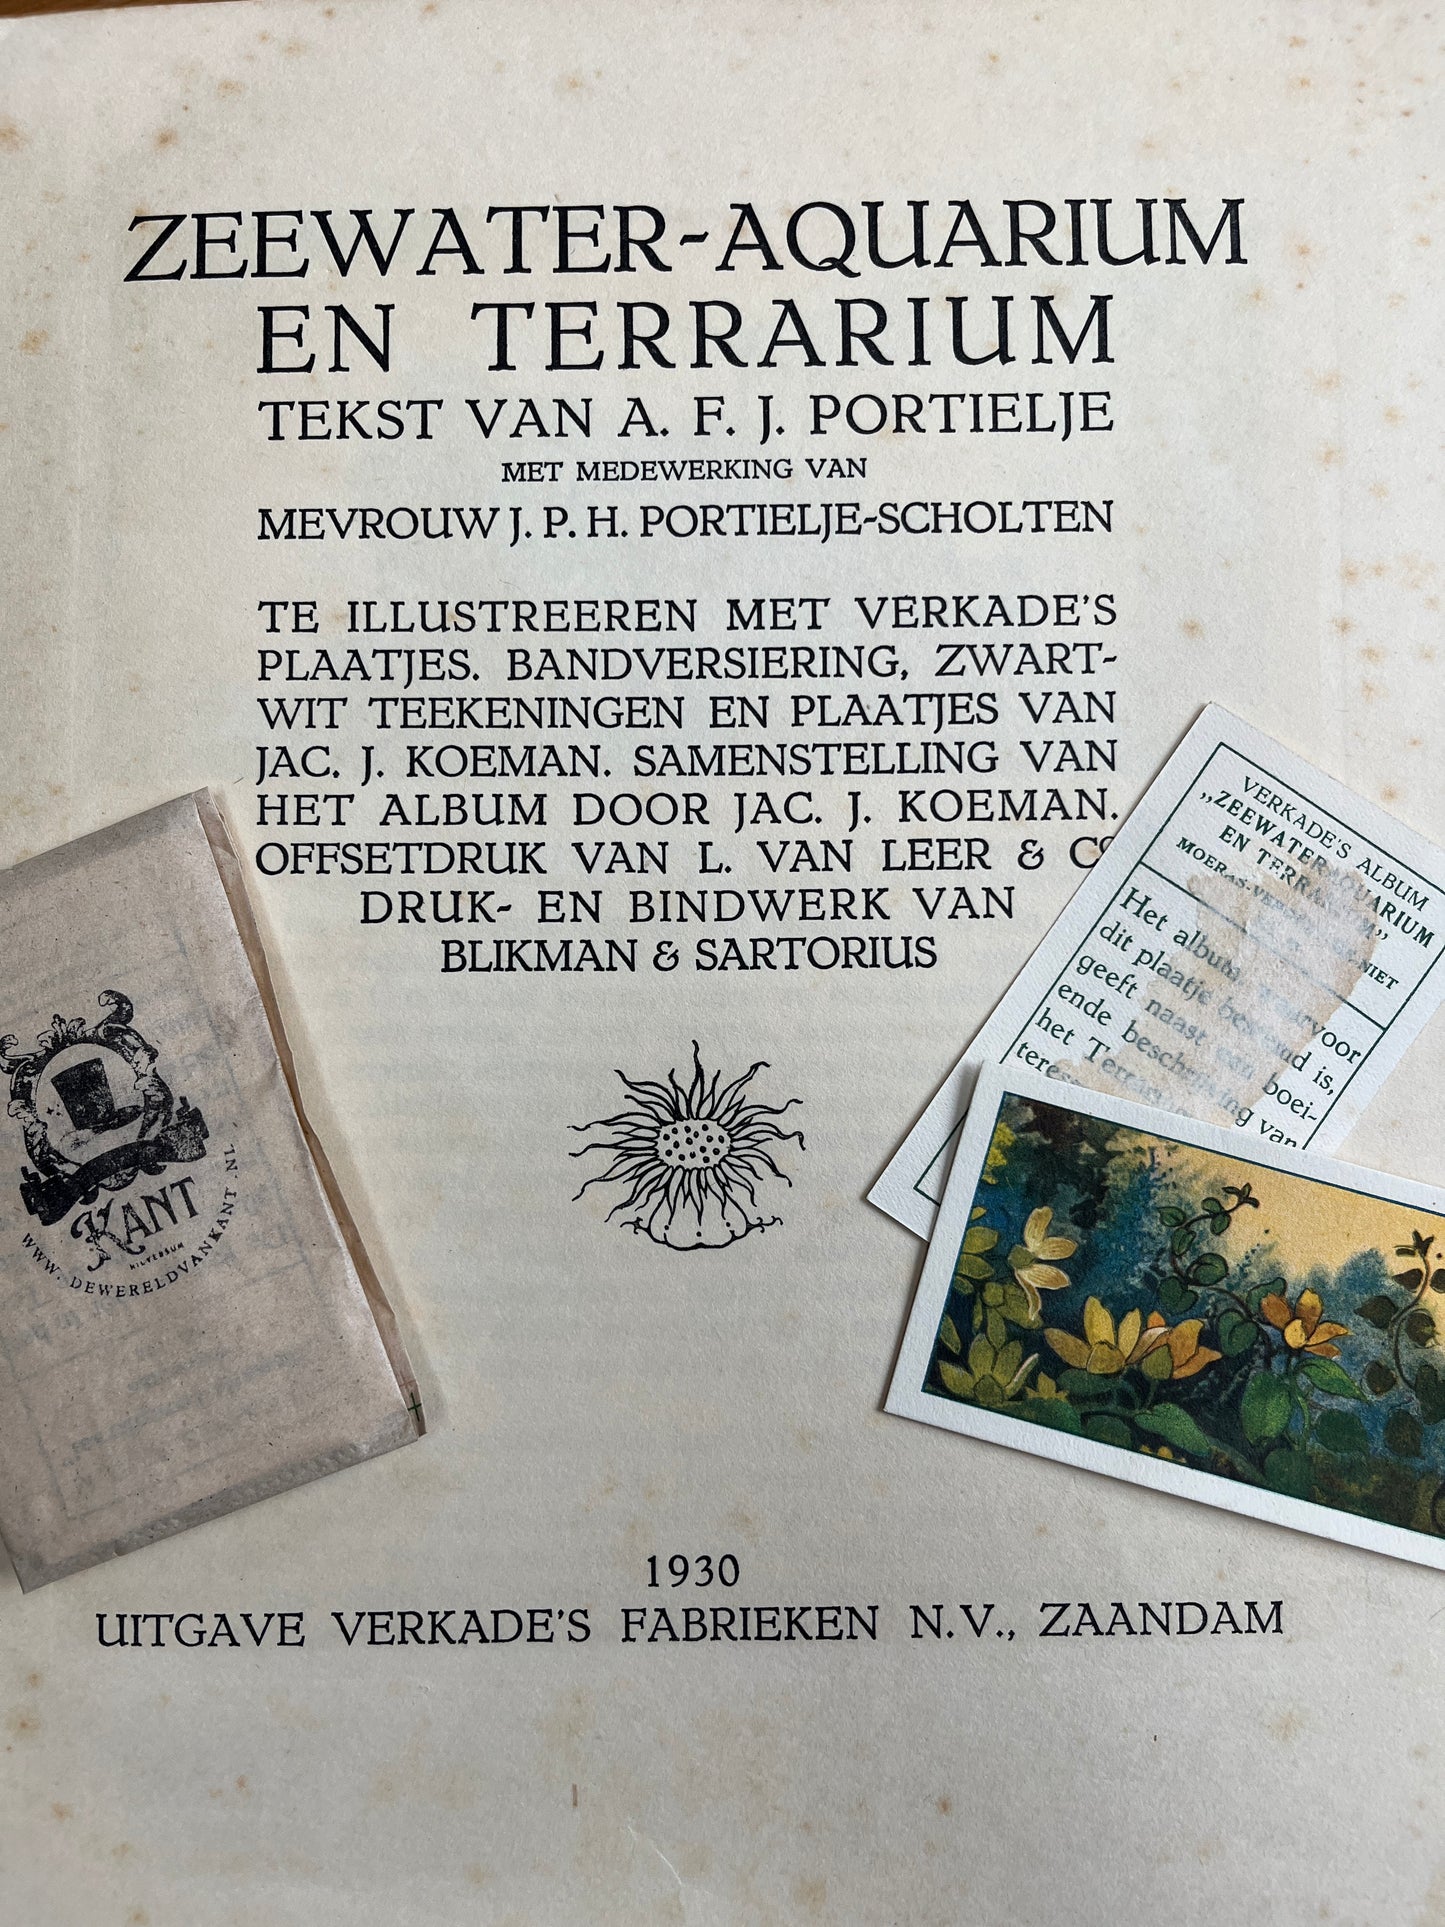 6 Verkade pictures Seawater aquarium and terrarium 1930 (115-120)